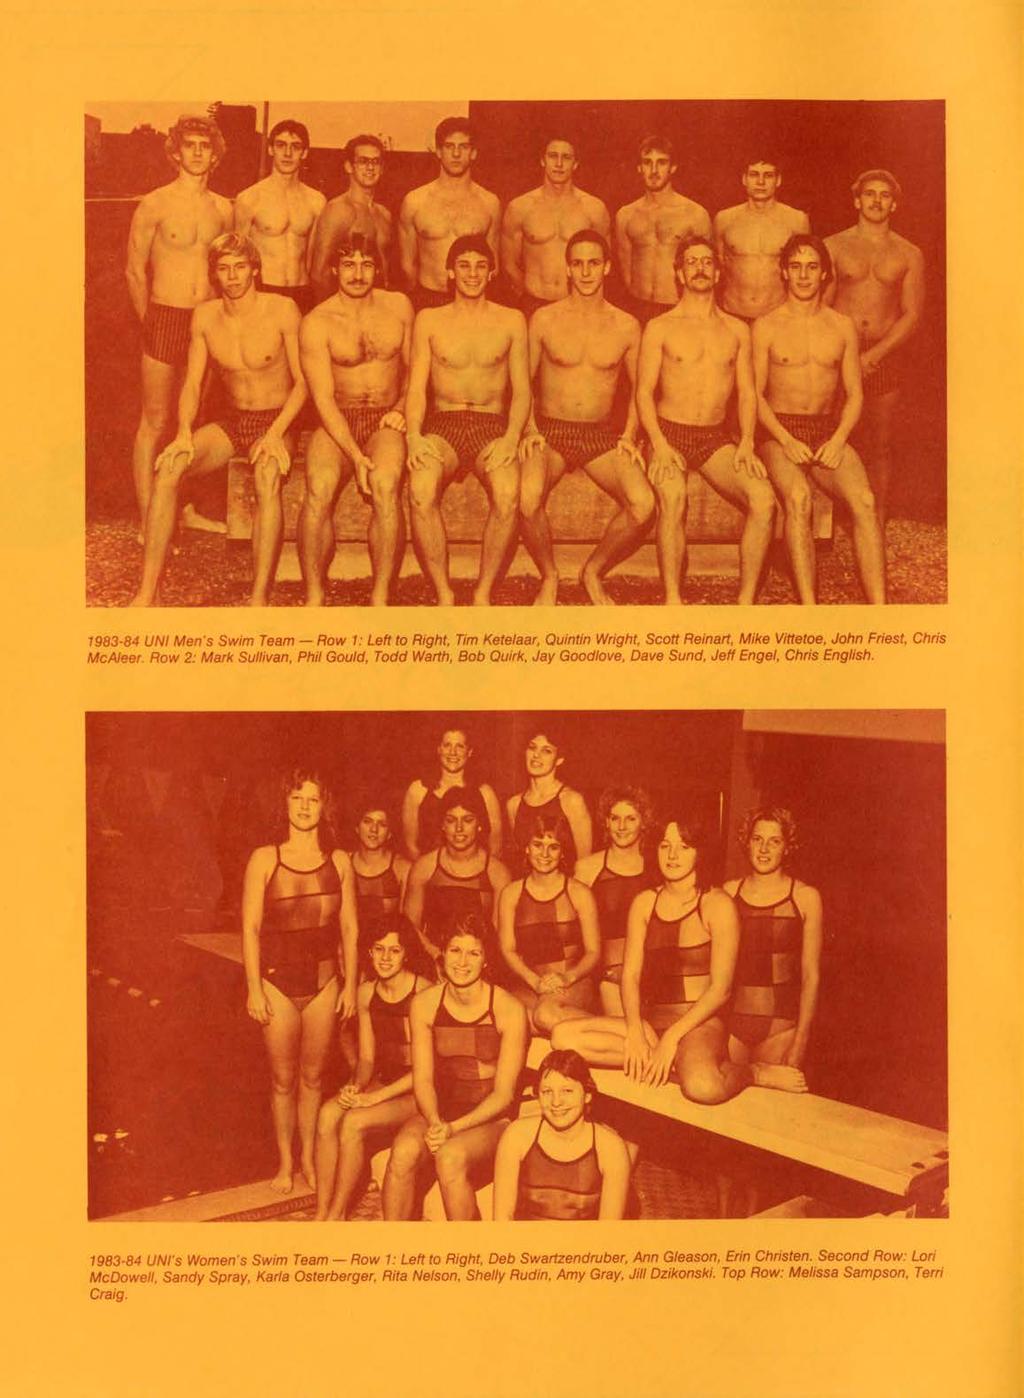 1983-84 UNI Men's Swim Team - Row 1: Left to Right, Tim Ketelaar, Quintin Wright, Scott Reinart, Mike Vittetoe, John Friest, Chris McAleer.